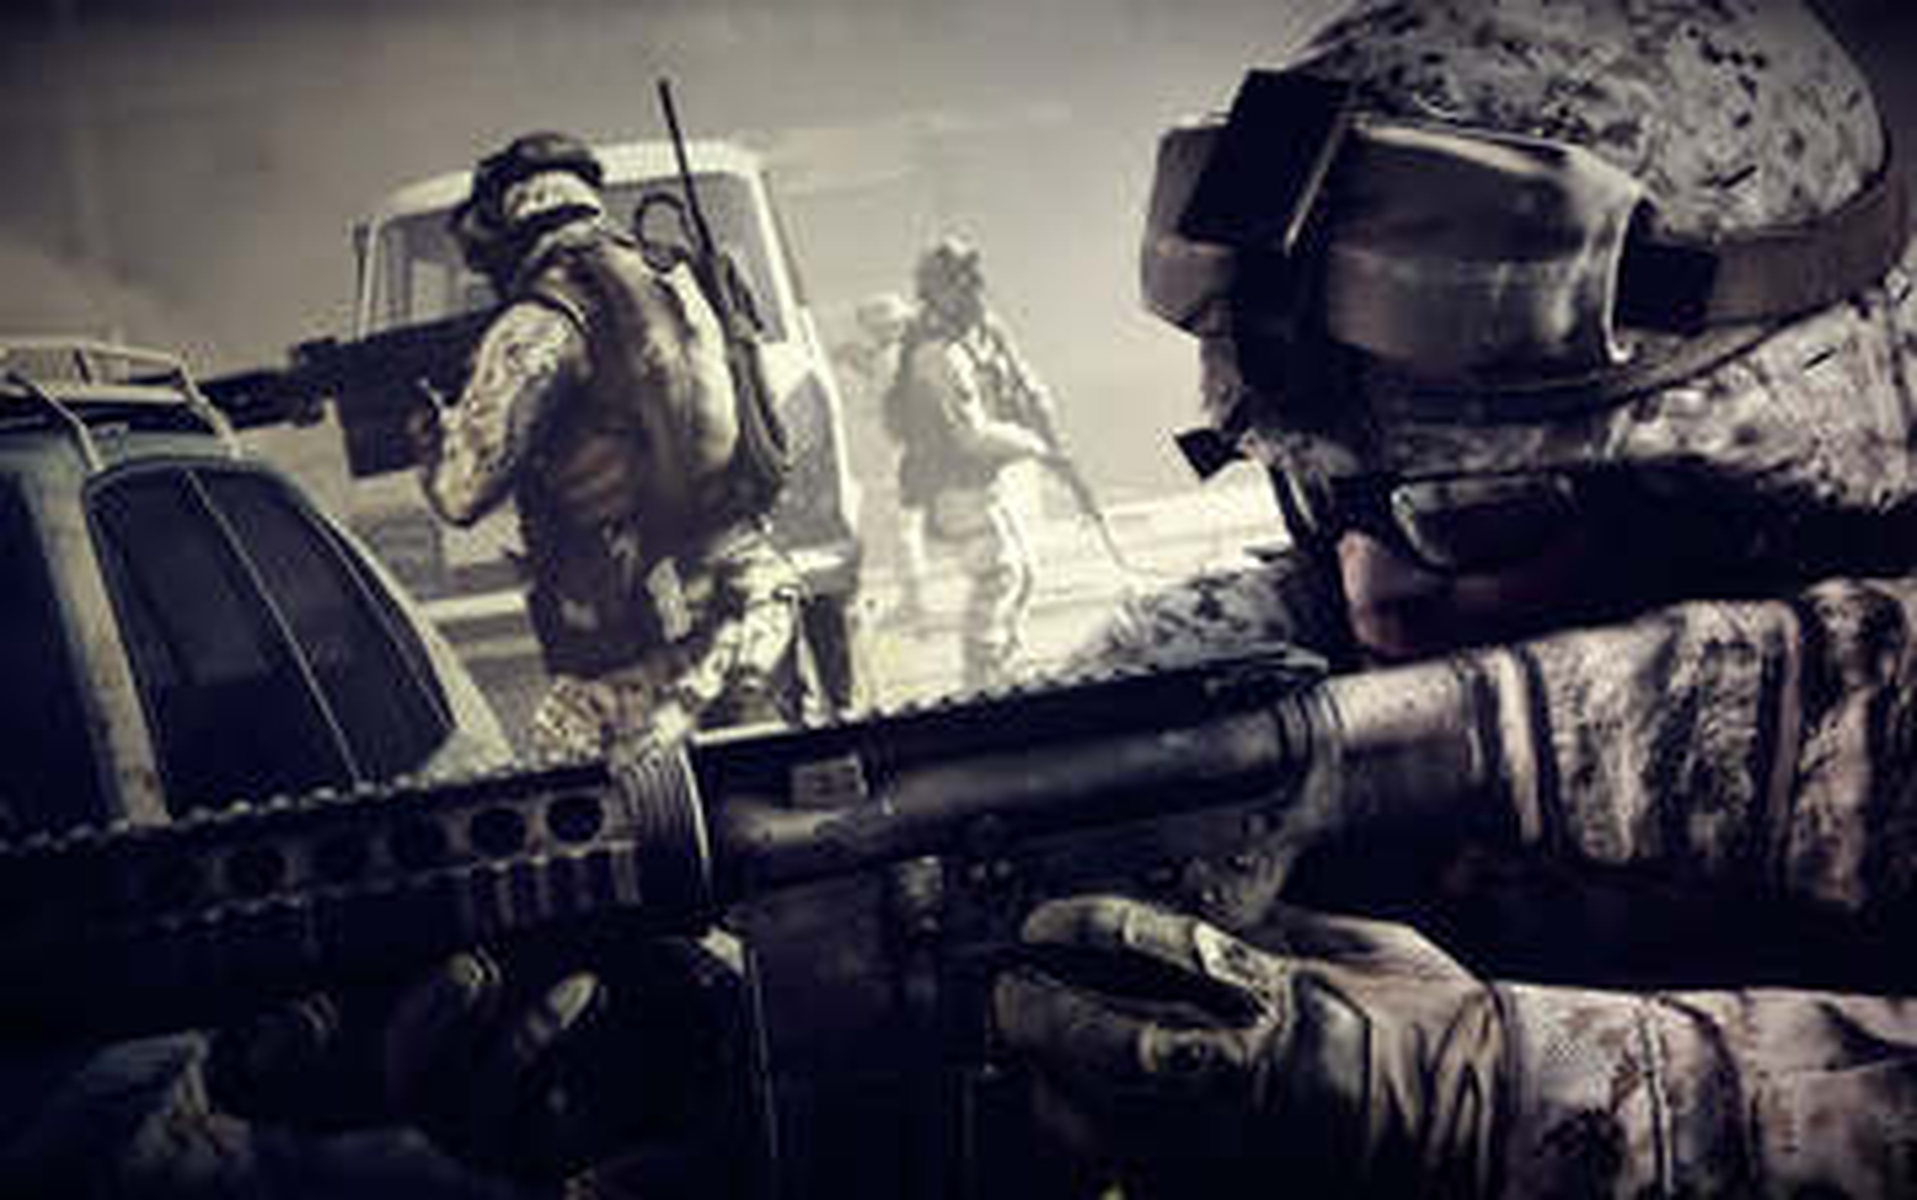 

Качественные HD обои игры Battlefield 1600x1200

